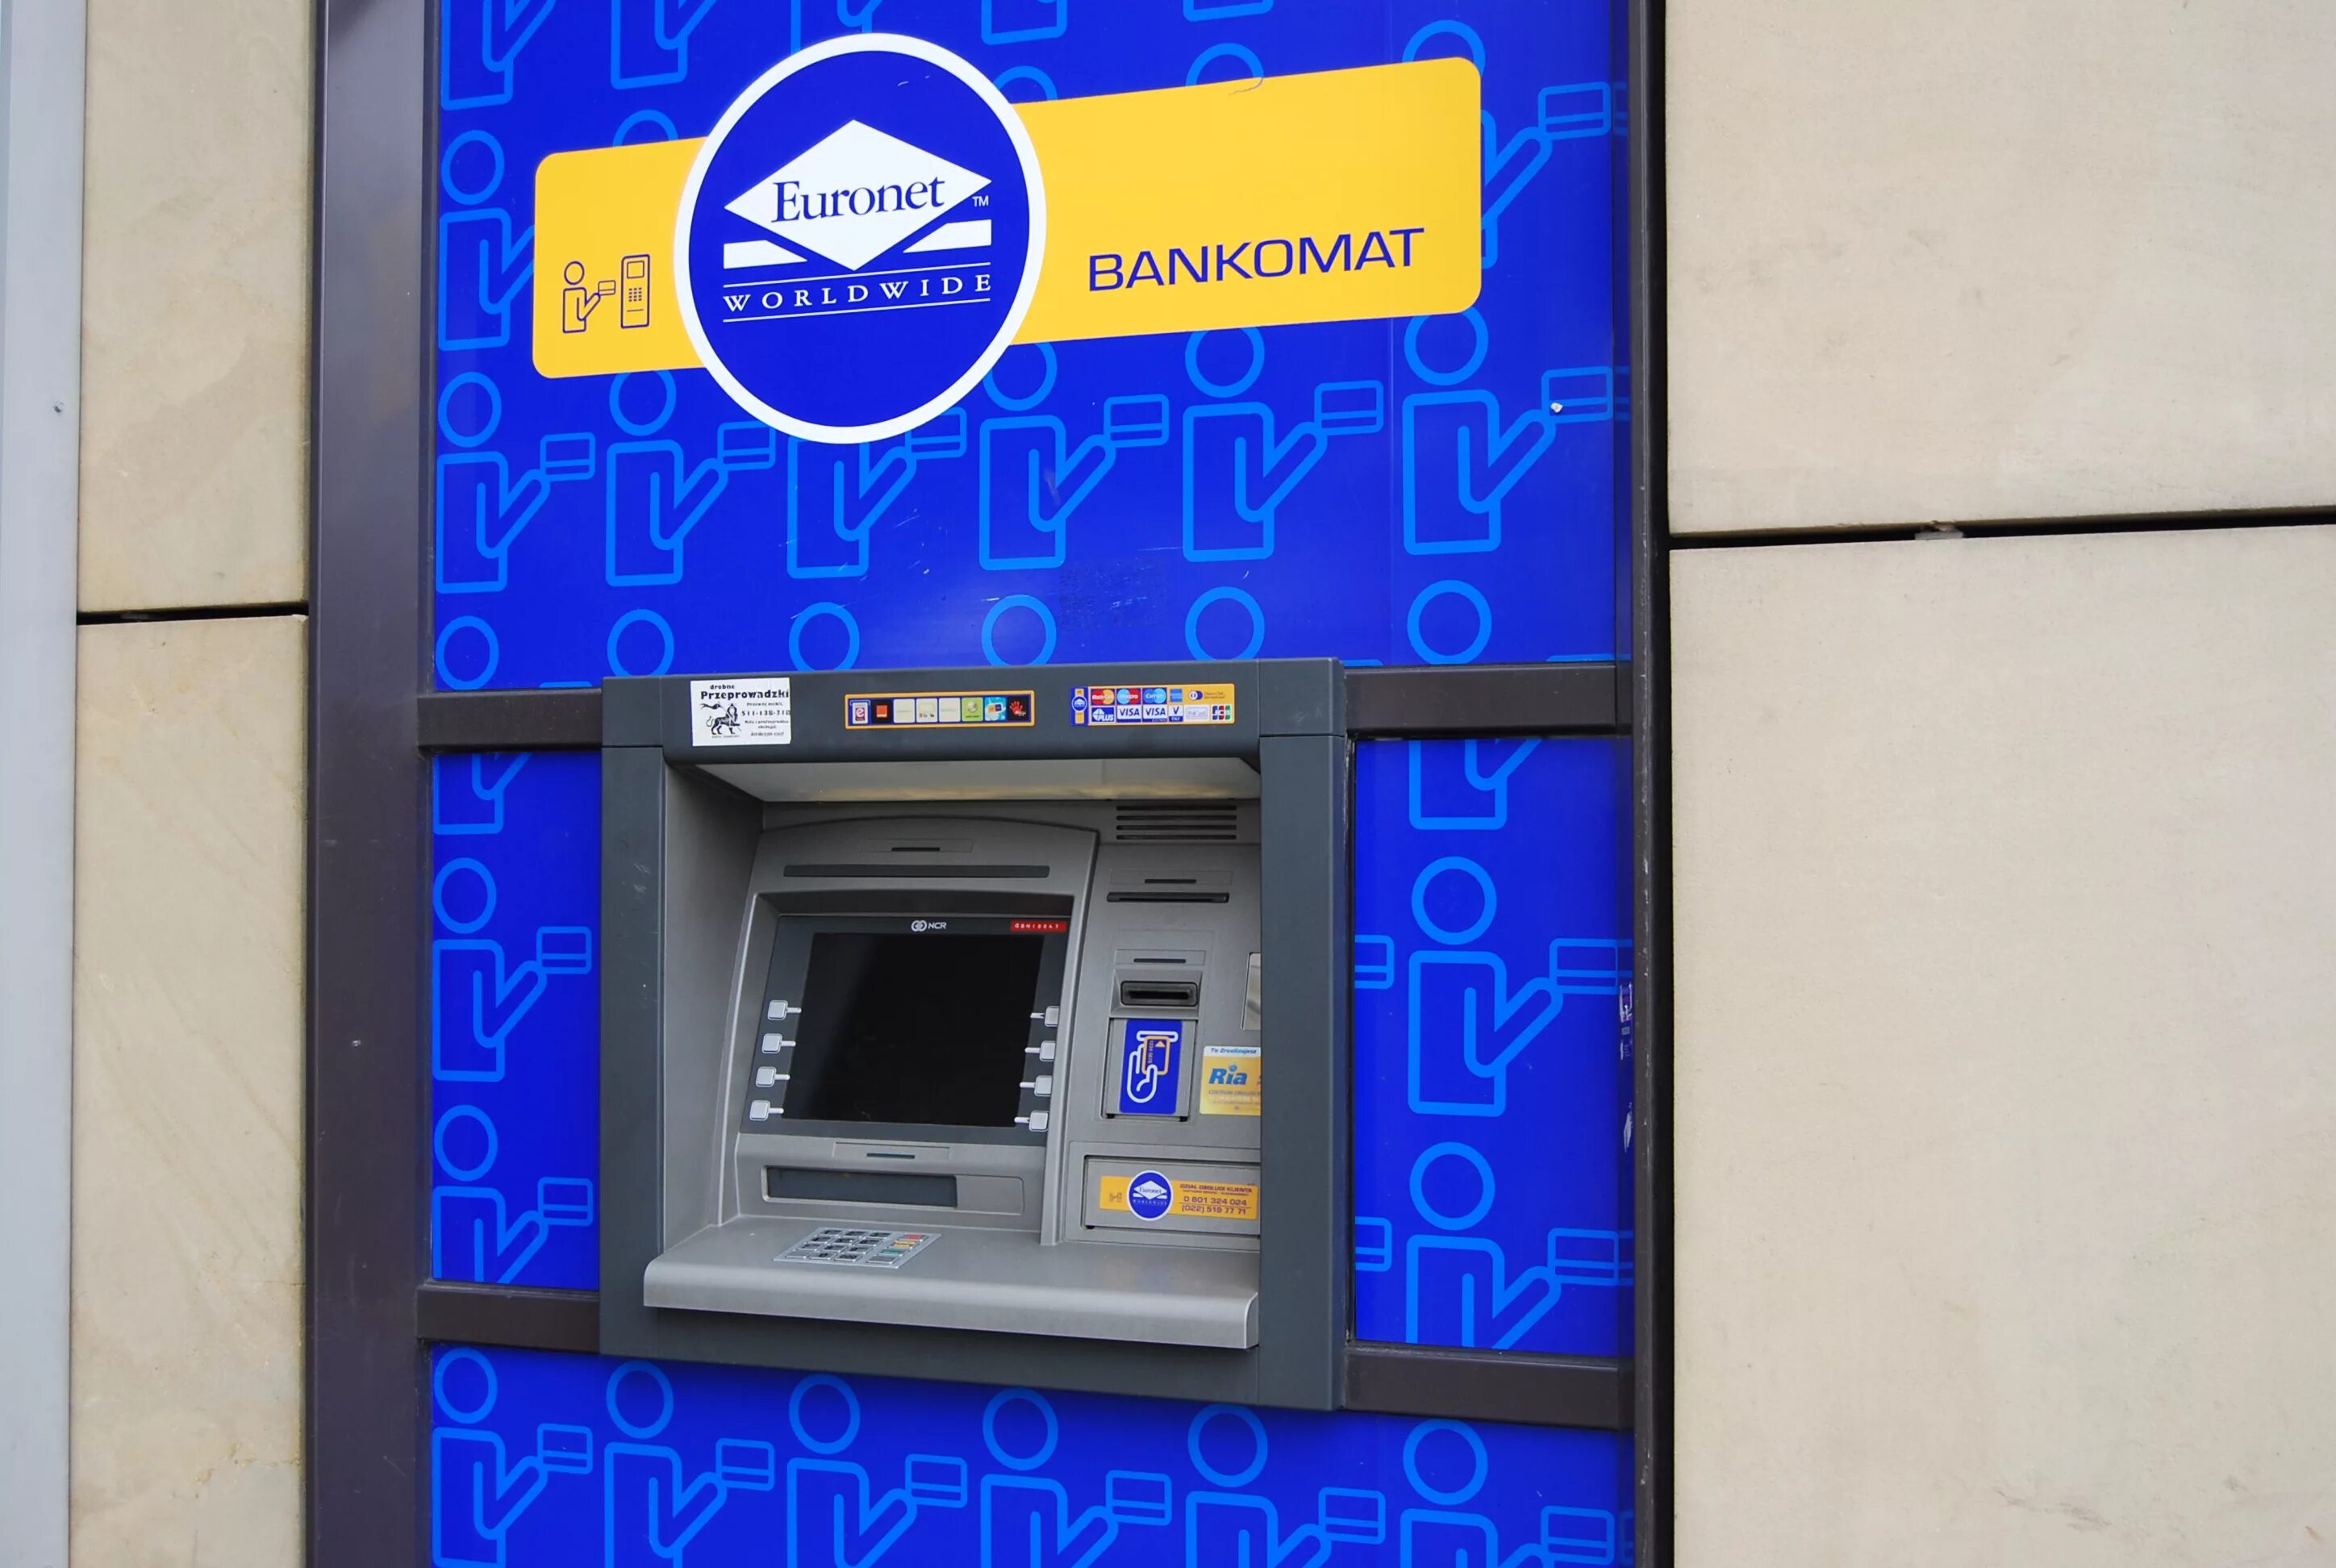 Банкоматы Euronet в Таллине. Банкомат Макараска Euronet. Банкоматы ПРИВАТБАНКА В Ялте в 2013 году. Использования адм Банкомат пост.